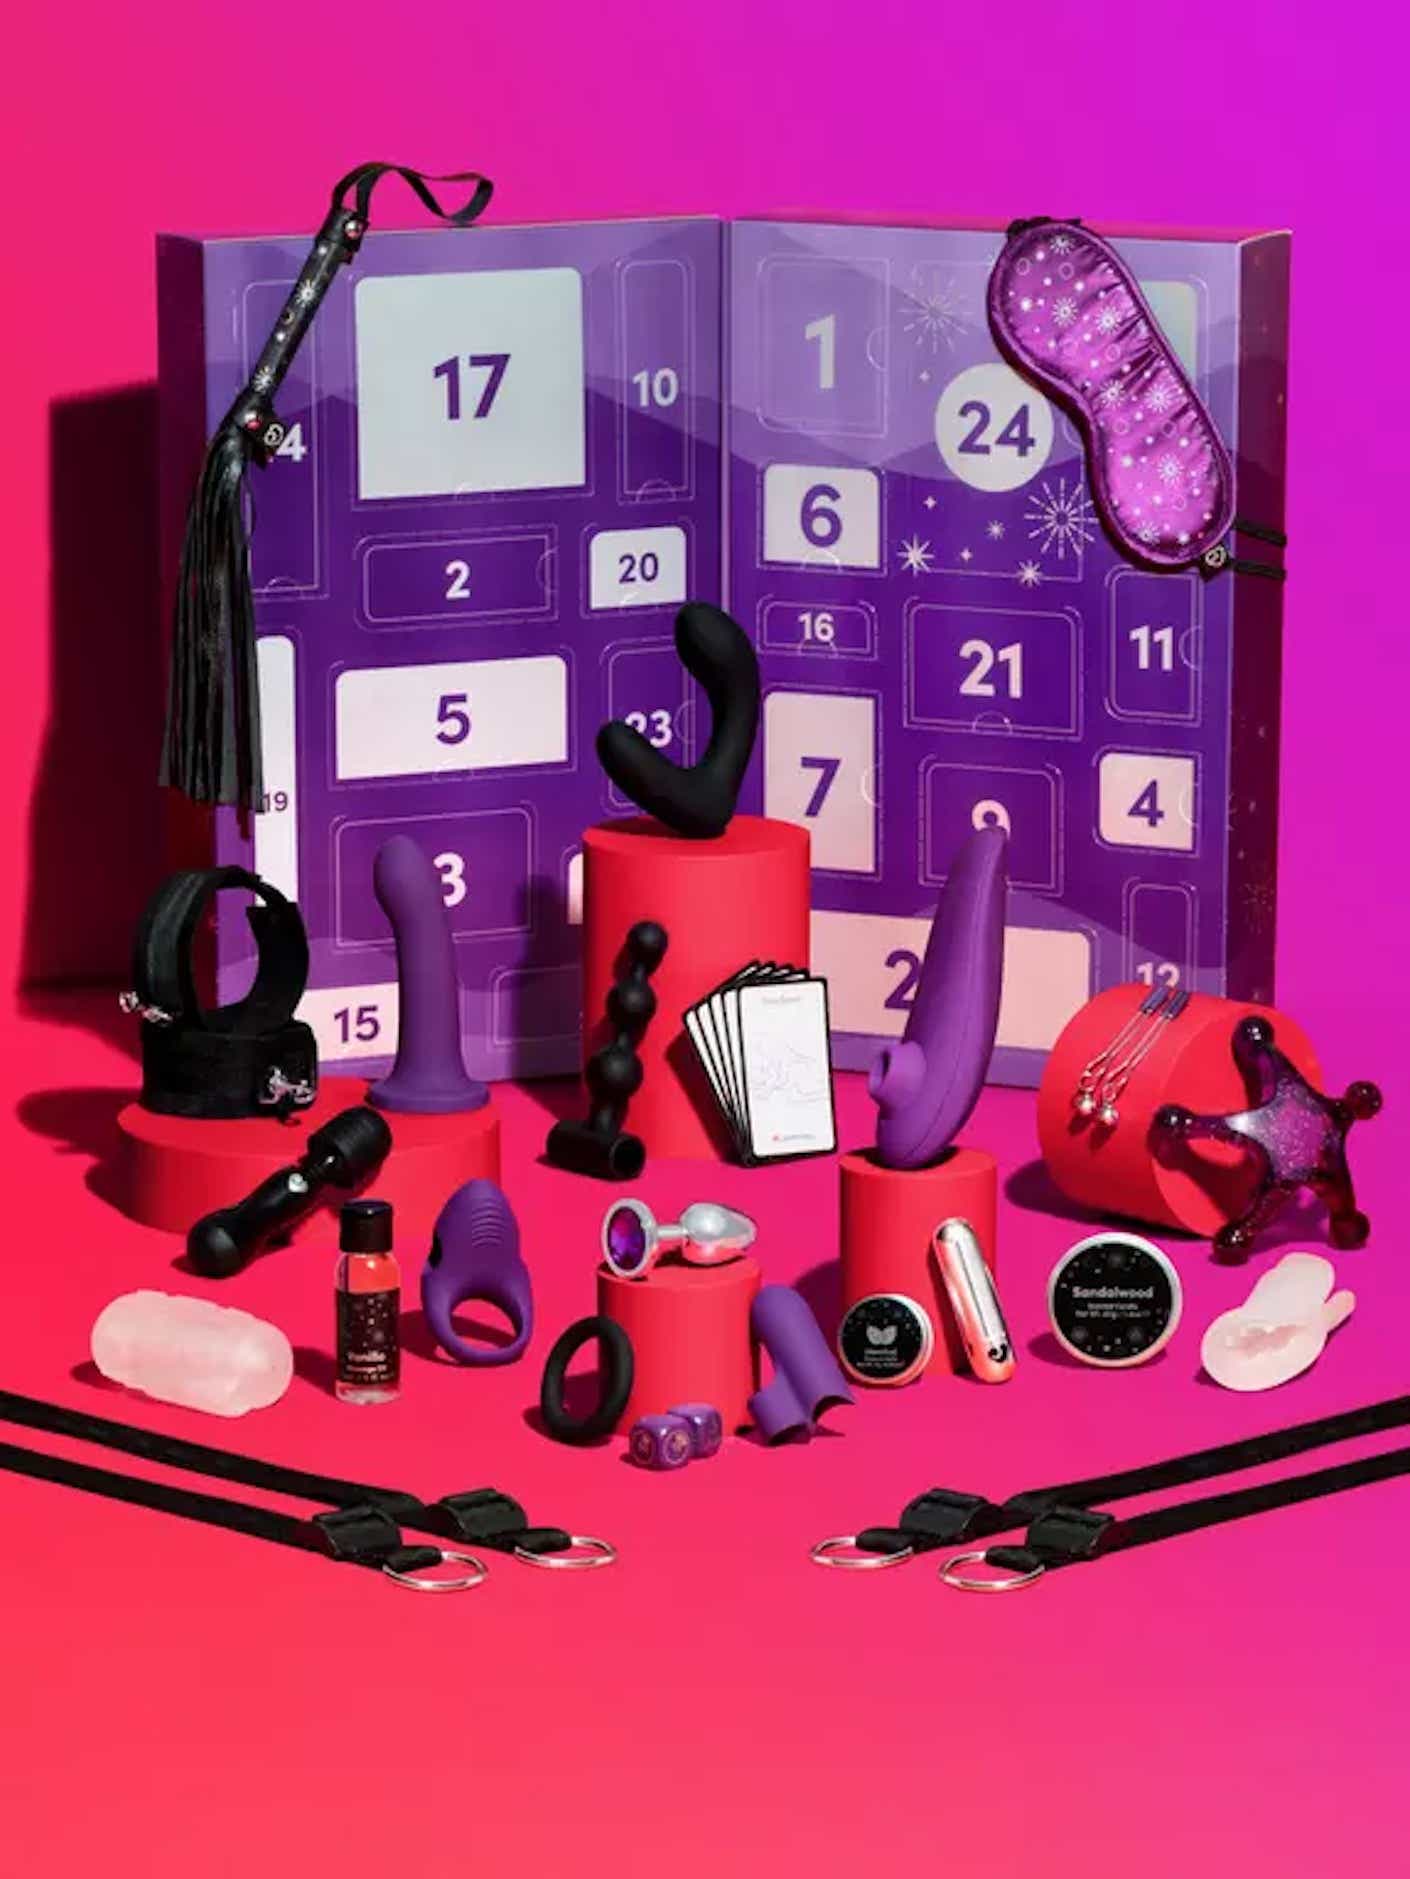 A set of 24 sex toys